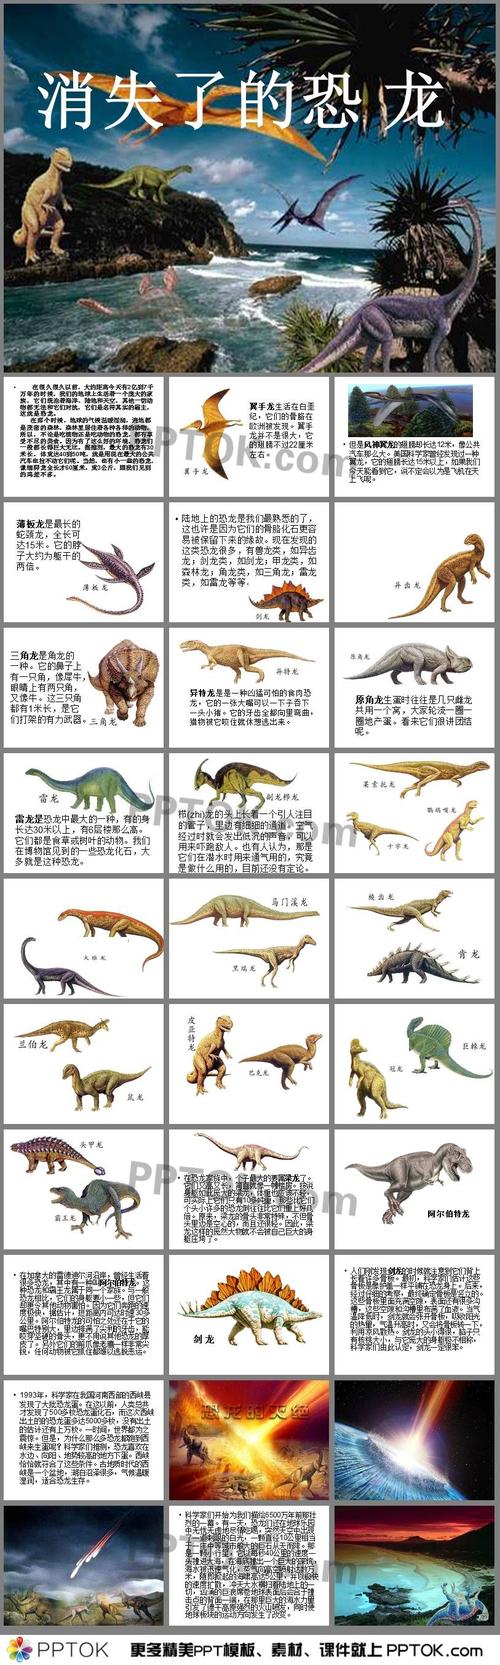 有哪些恐龙的名字的相关图片